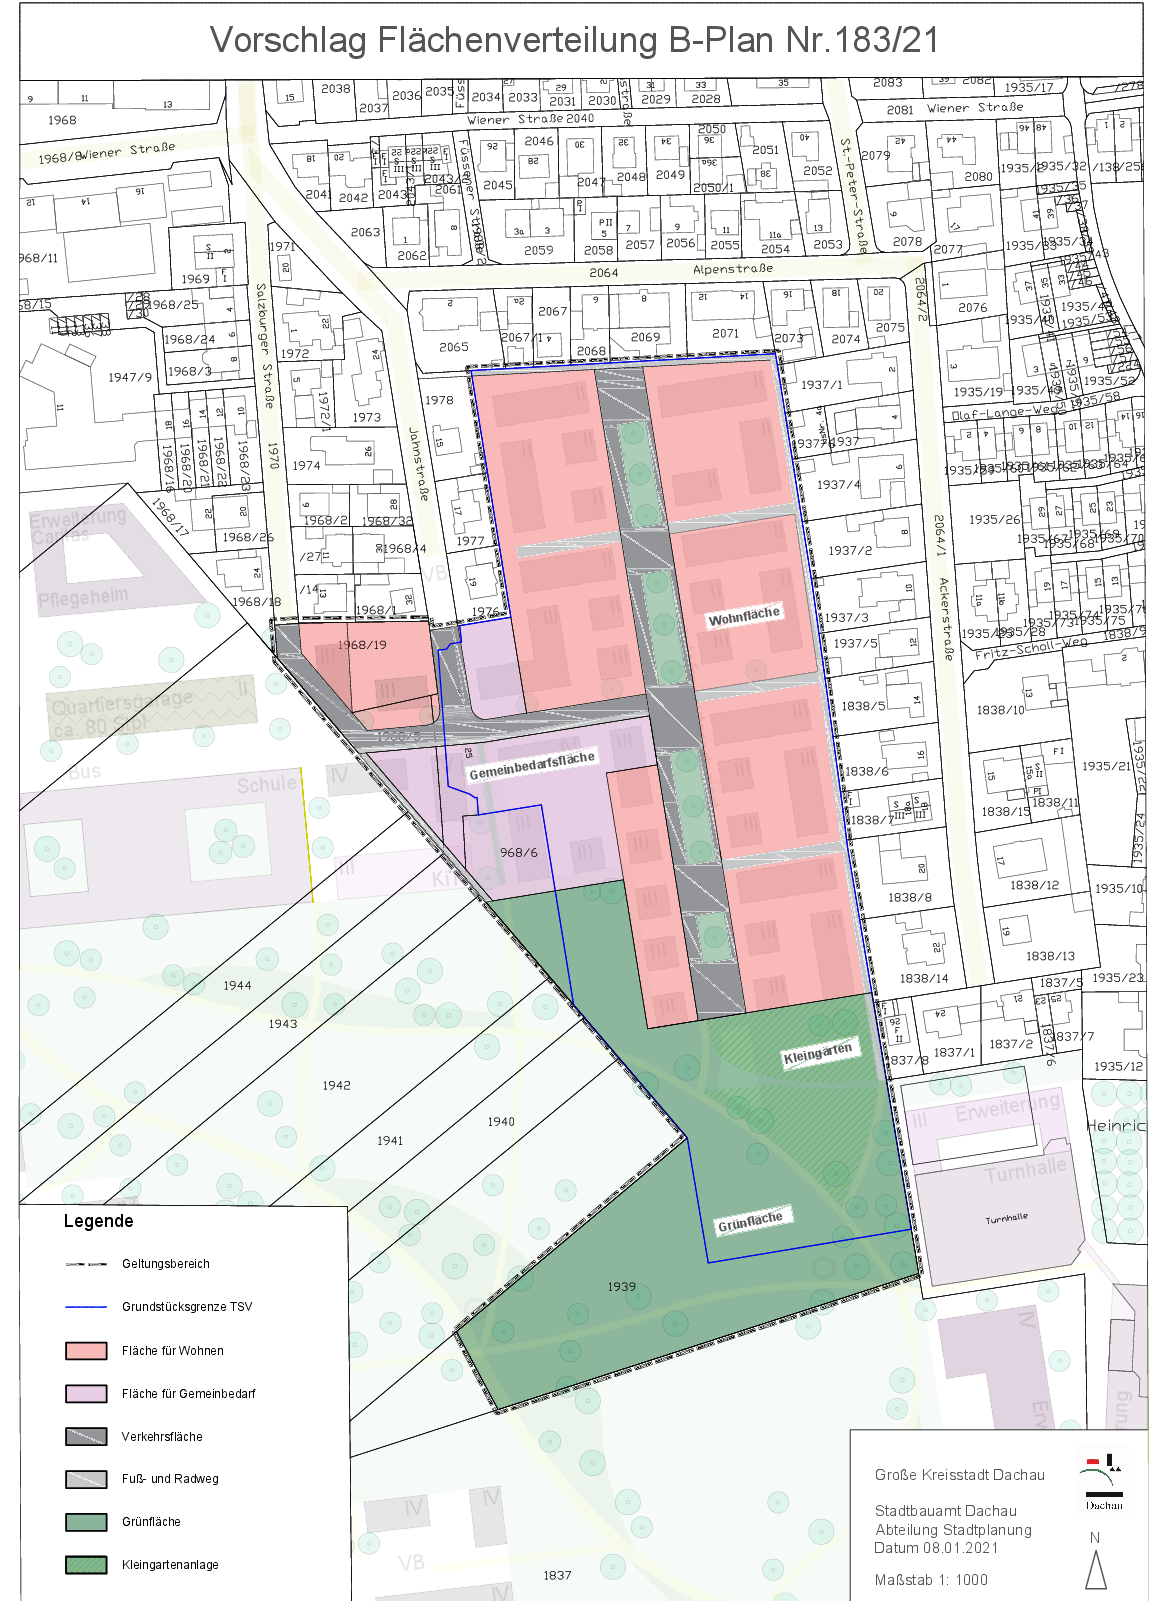 Abbildung des Vorschlags zur Flächenverteilung (Flur 183/21) mit Auszeichnung der Wohn-, Gewerbe- und Grünflächen